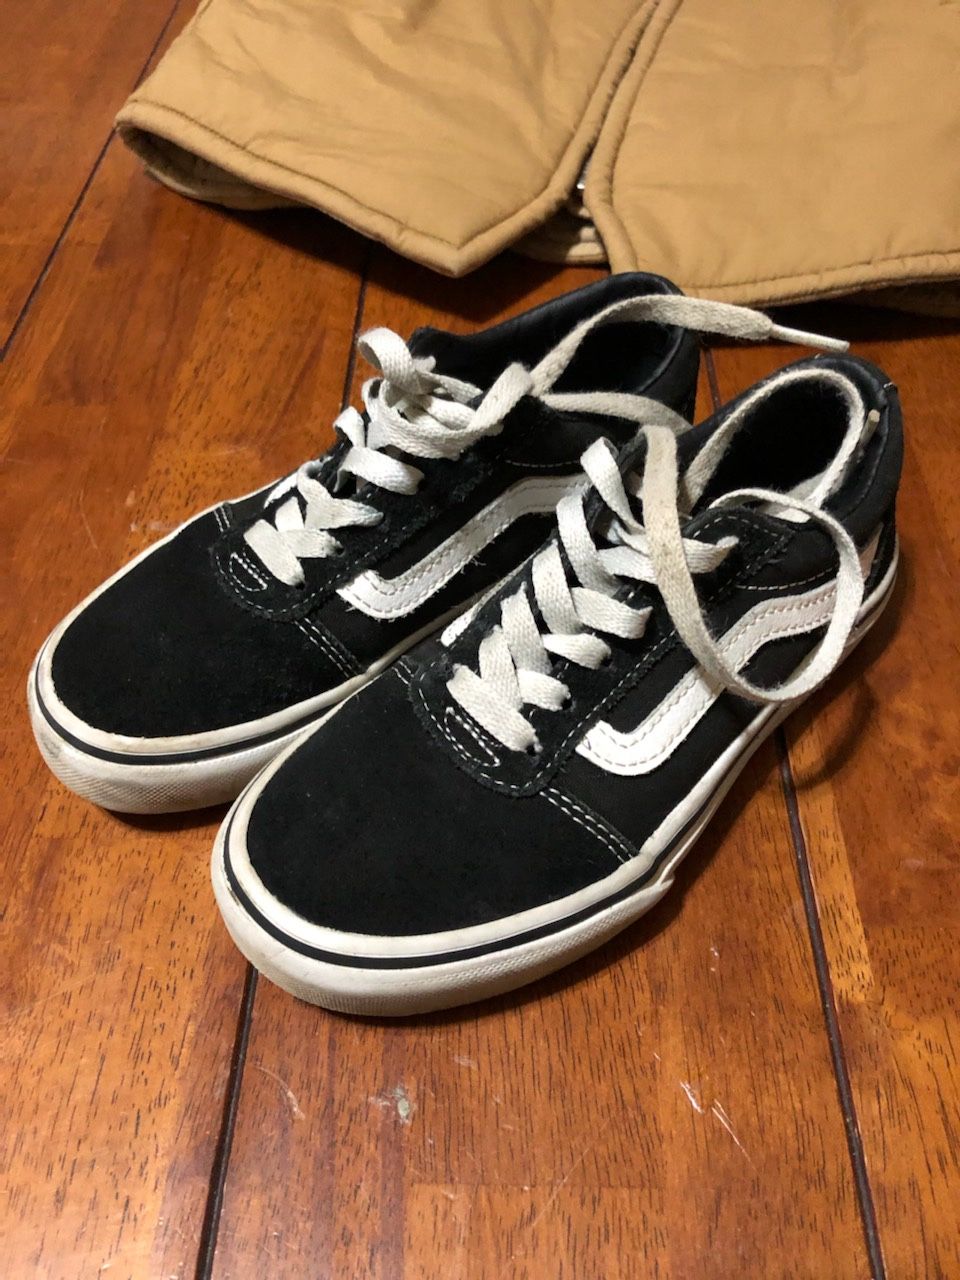 Sneakers “Van” boys 13